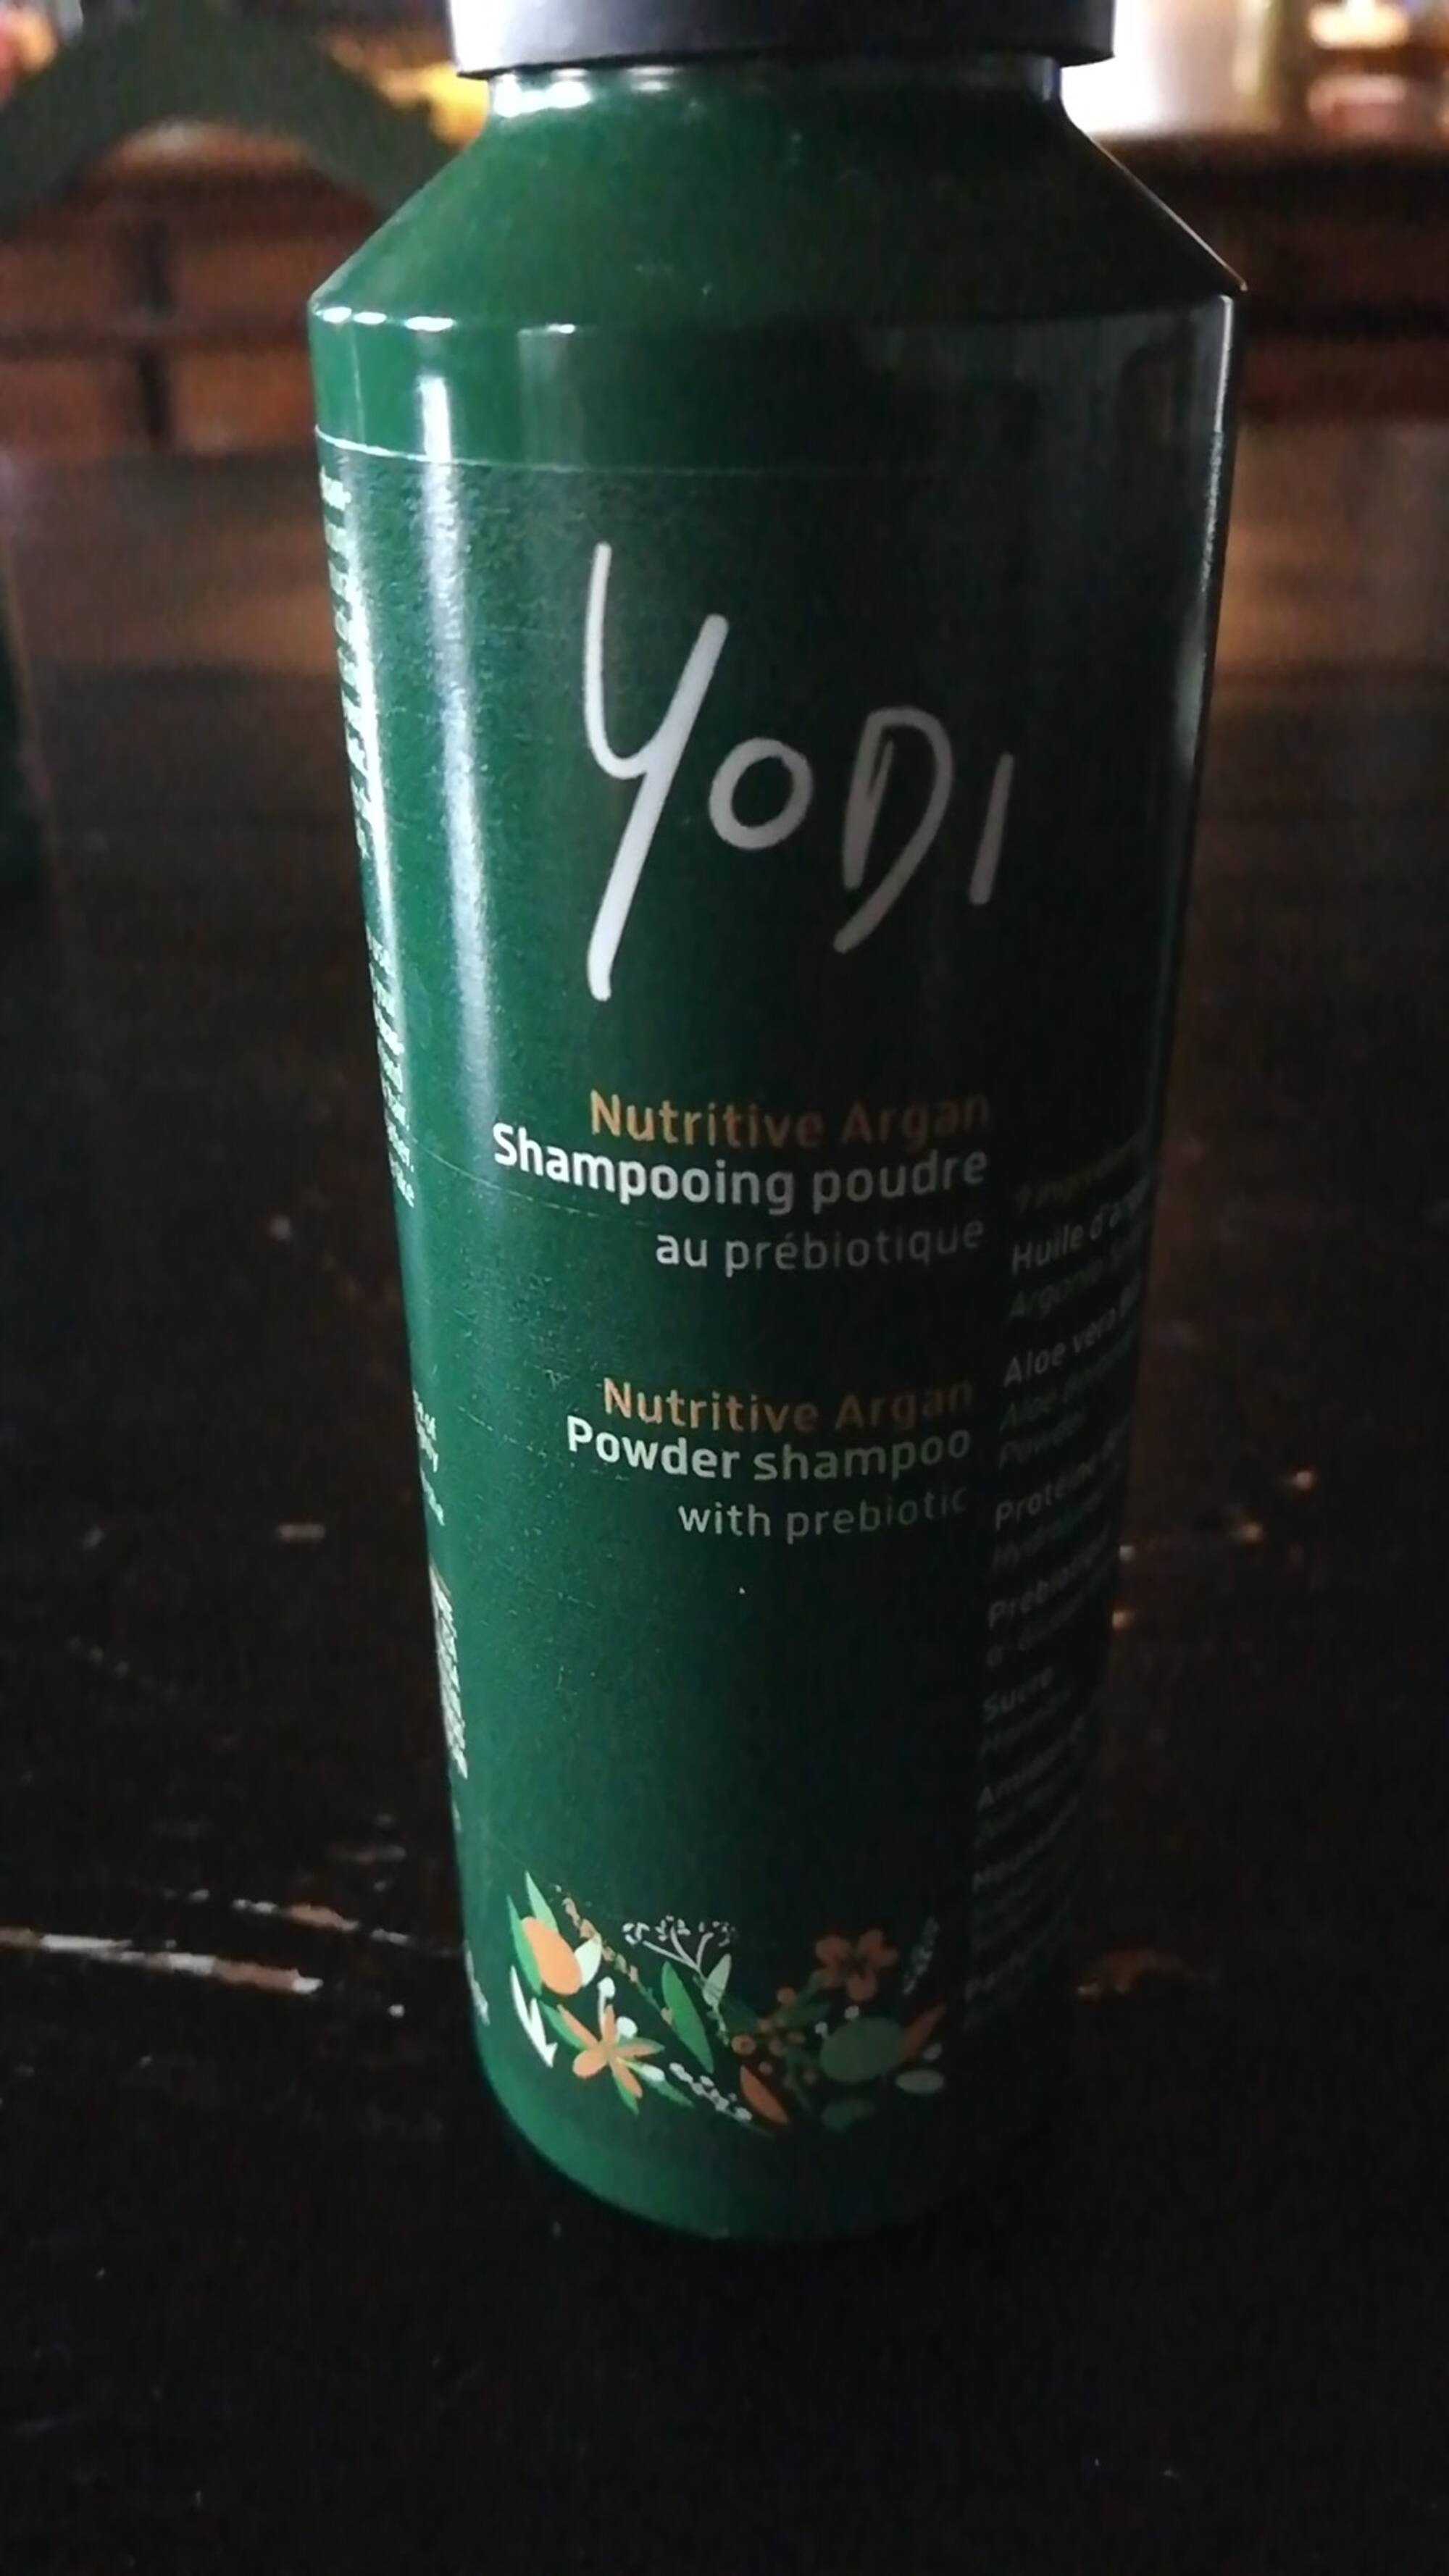 YODI - Nutritive argan - Shampooing poudre au prébiotique